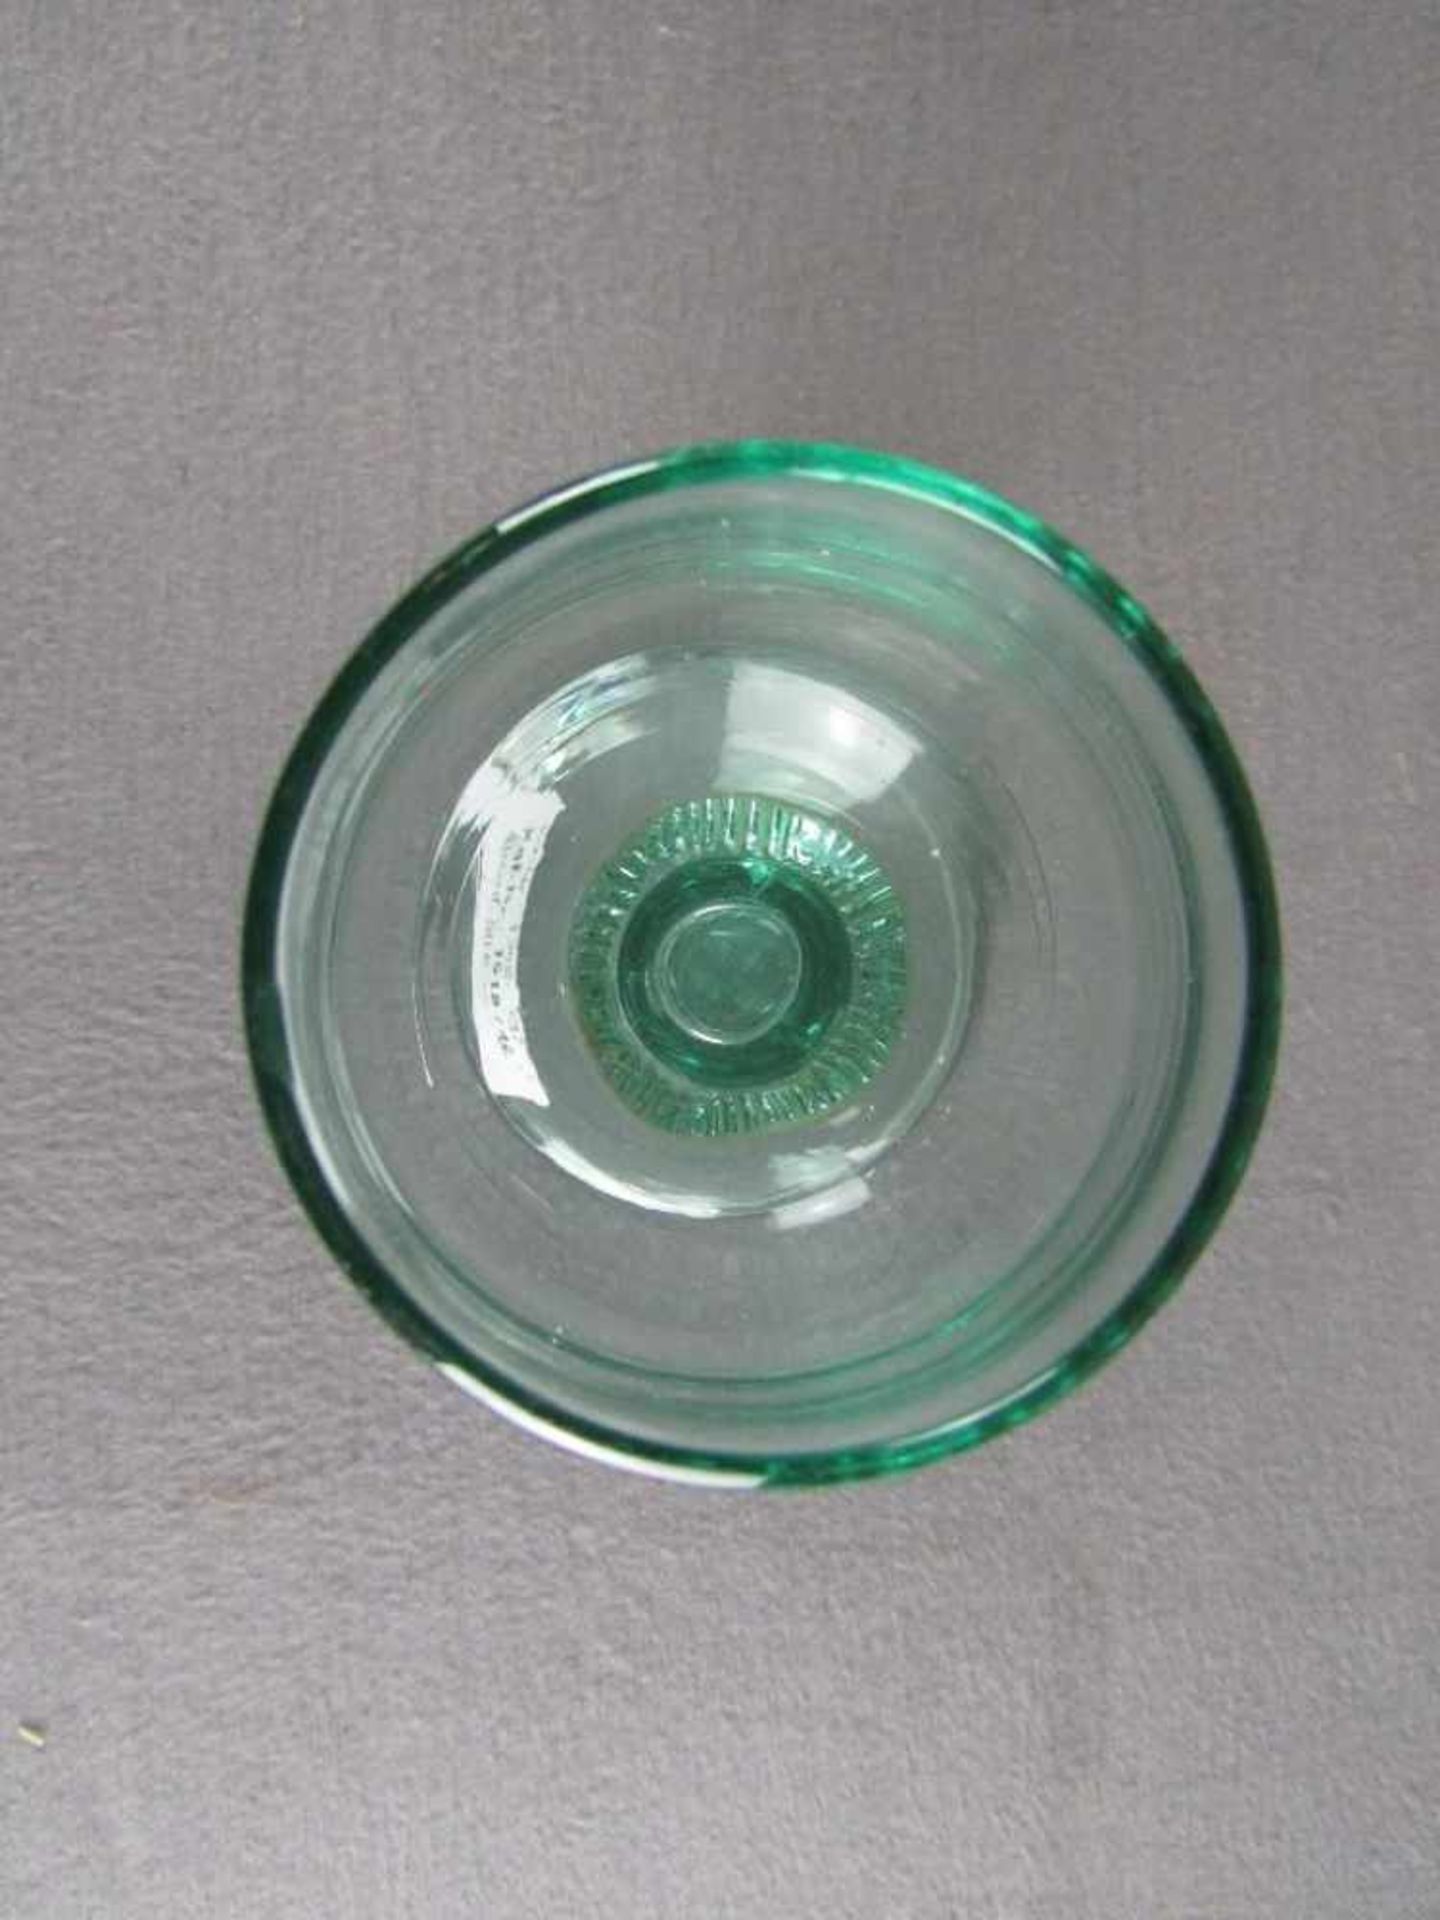 Antikes Pokalglas leichter Chip Lufteinschlüsse 16cm hoch- - -20.00 % buyer's premium on the - Bild 2 aus 3